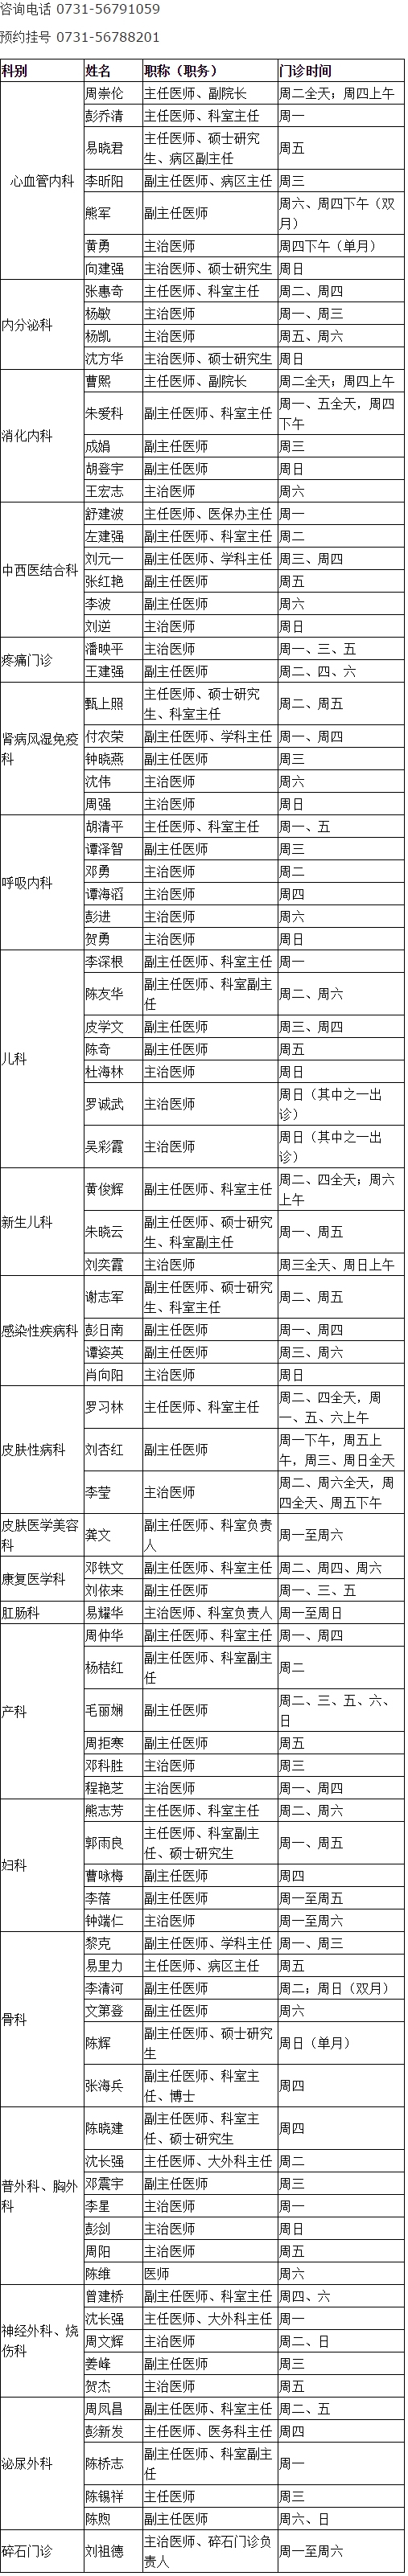 湘乡市人民医院专家、专科门诊一览表（2018年5月） - 湘乡市人民医院.jpg